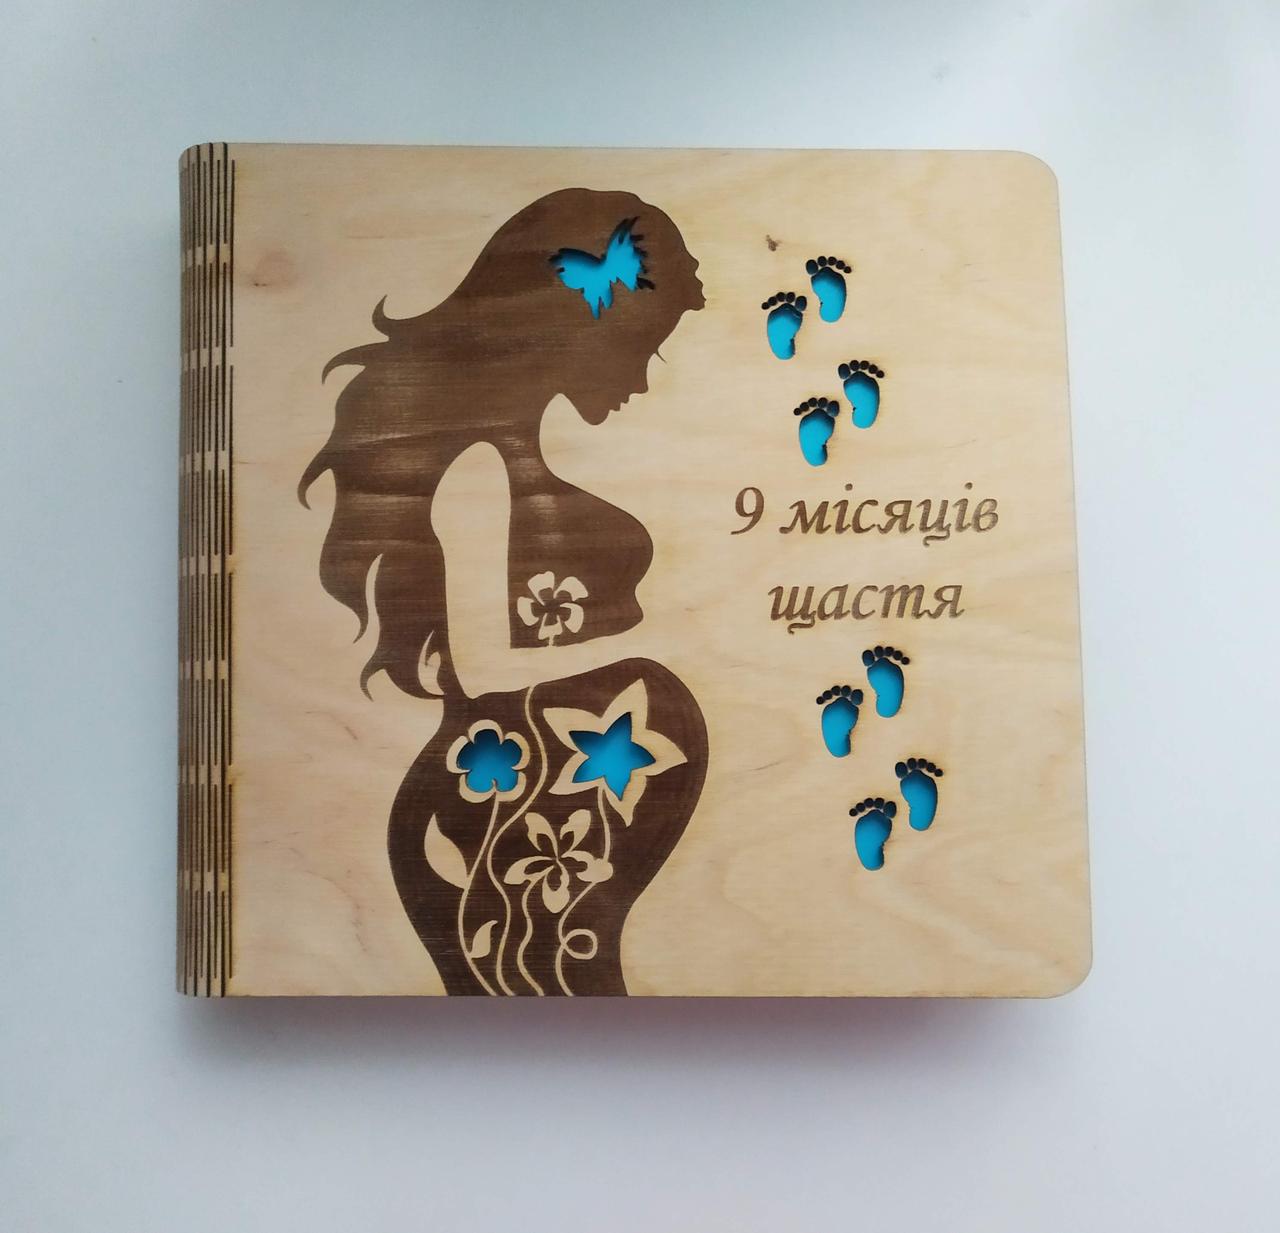 Дерев'яний фотоальбом 9 мейсків щастів (хлопчик), альбом для фото вагітної, подарунок для майбутньої мами